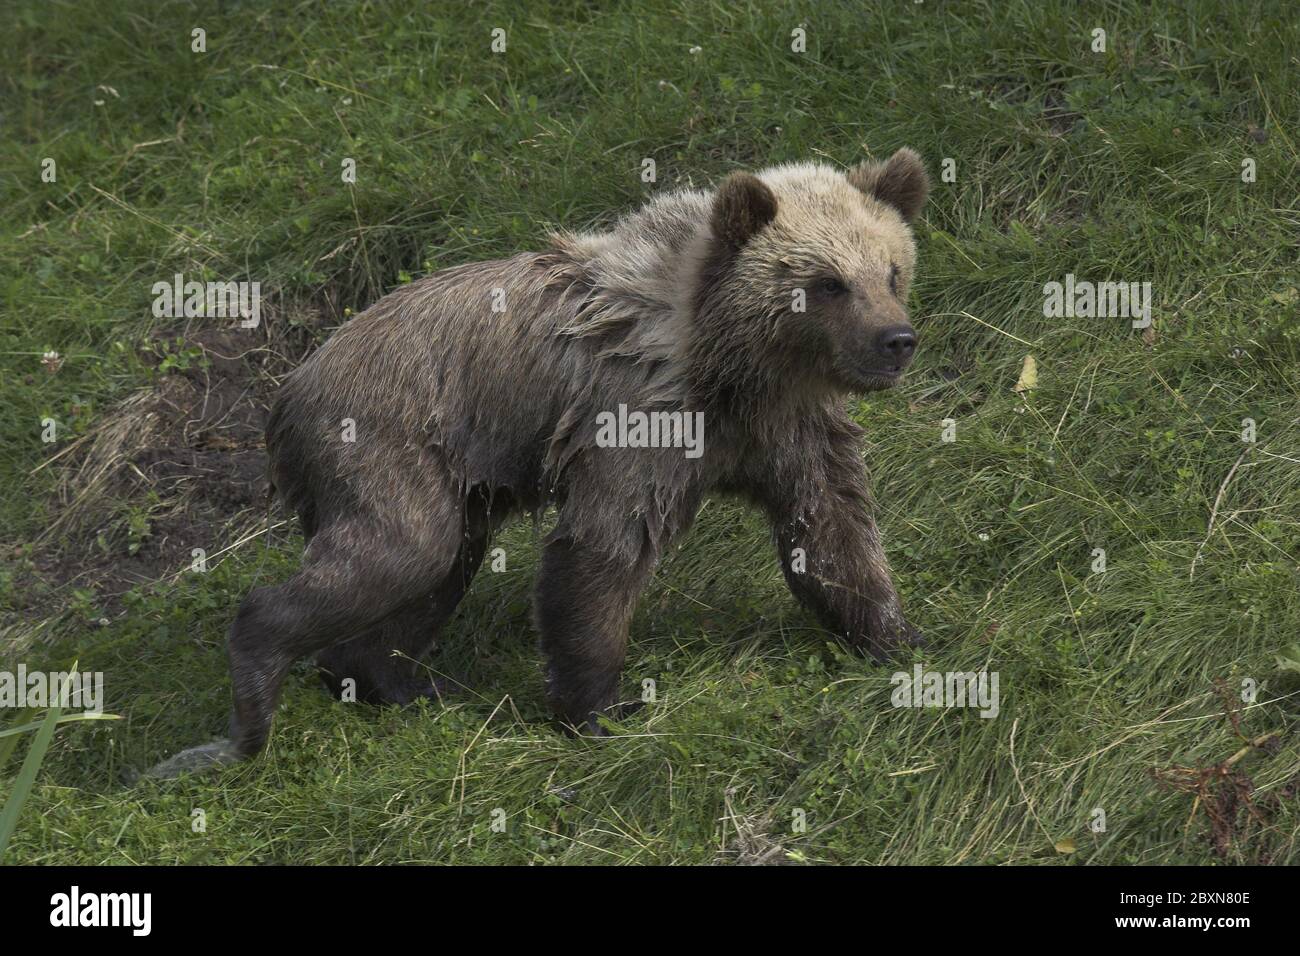 jeune ours brun européen, ursus arctos Banque D'Images